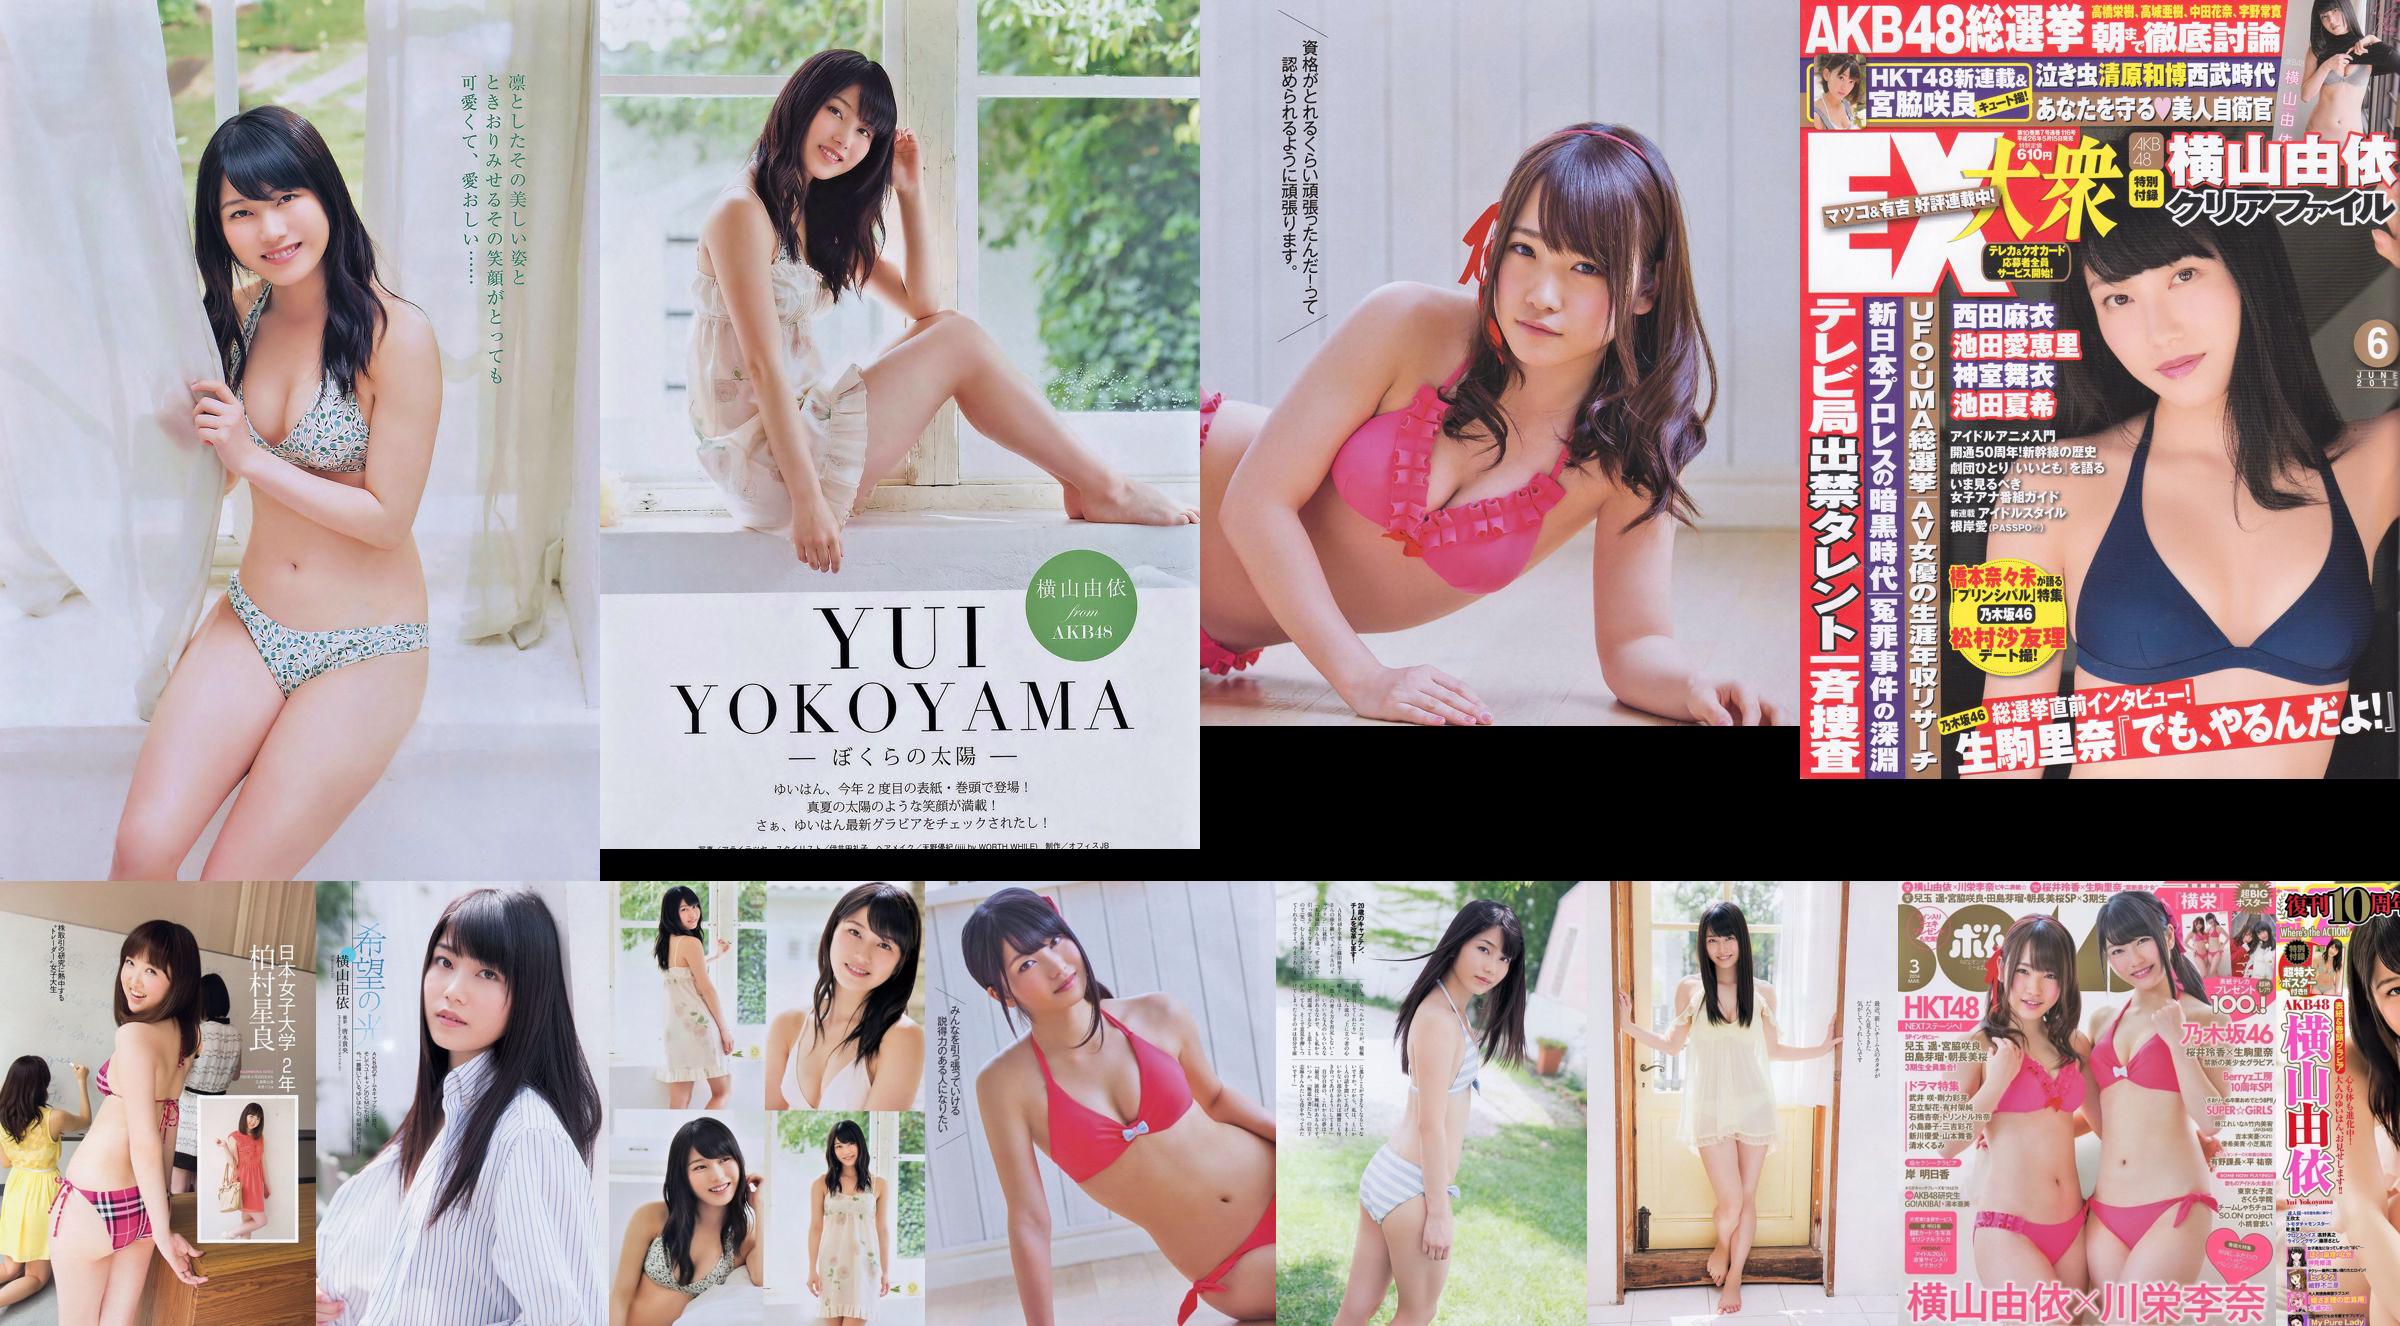 Yui Yokoyama Nozomi Sasaki Rina Koike Asuka Kuramochi Miwako Kakei Risa Yoshiki Ruri Shinato [Playboy semanal] 2013 No.38 Fotografía No.da2629 Página 12